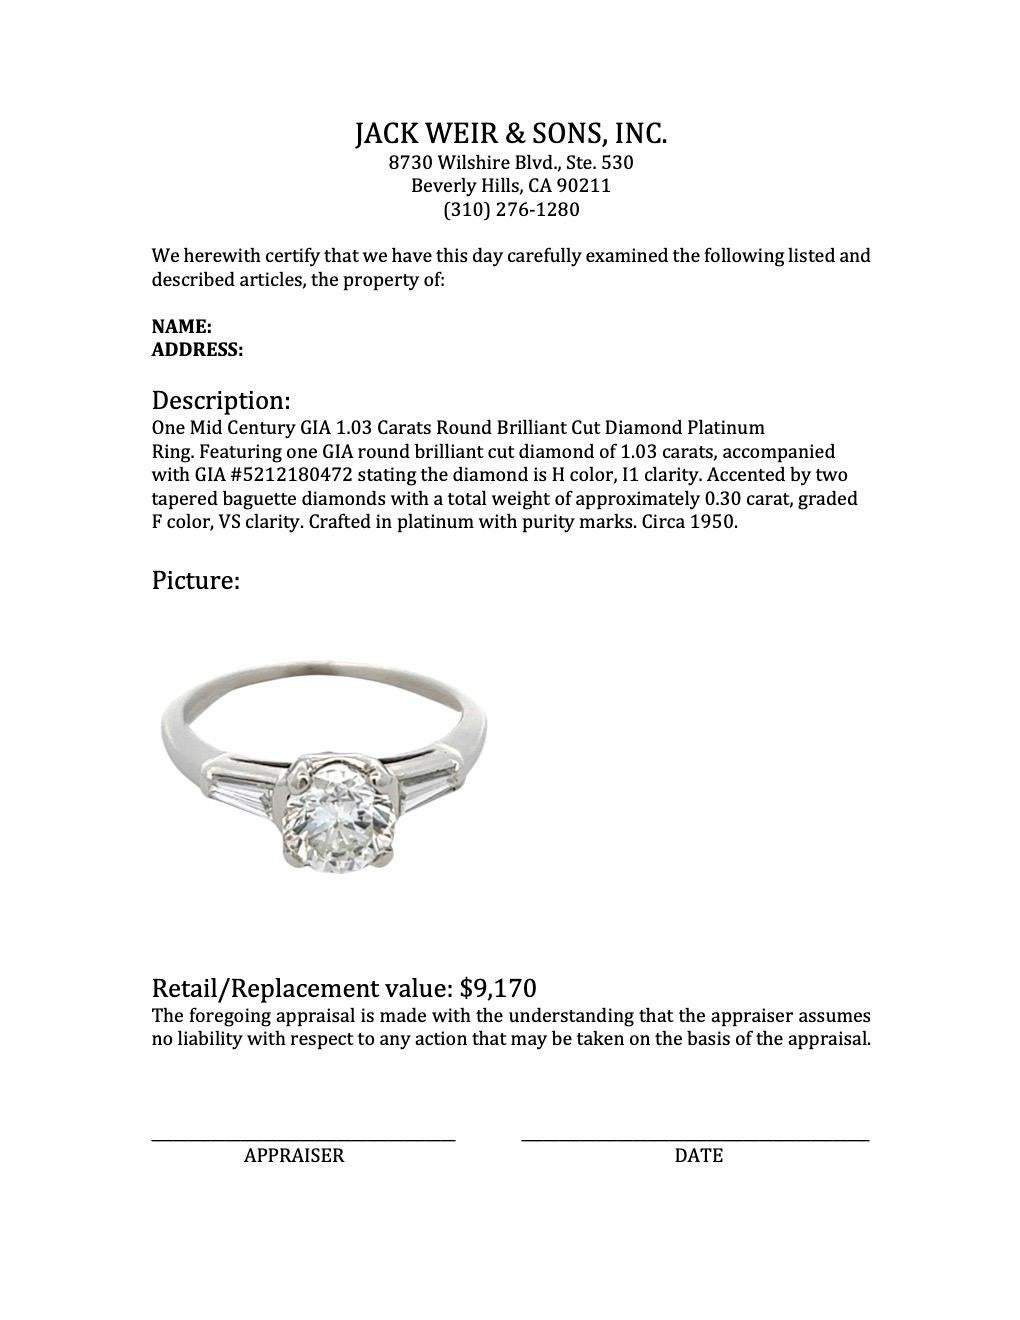 Midcentury GIA 1.03 Carats Round Brilliant Cut Diamond Platinum Ring 4